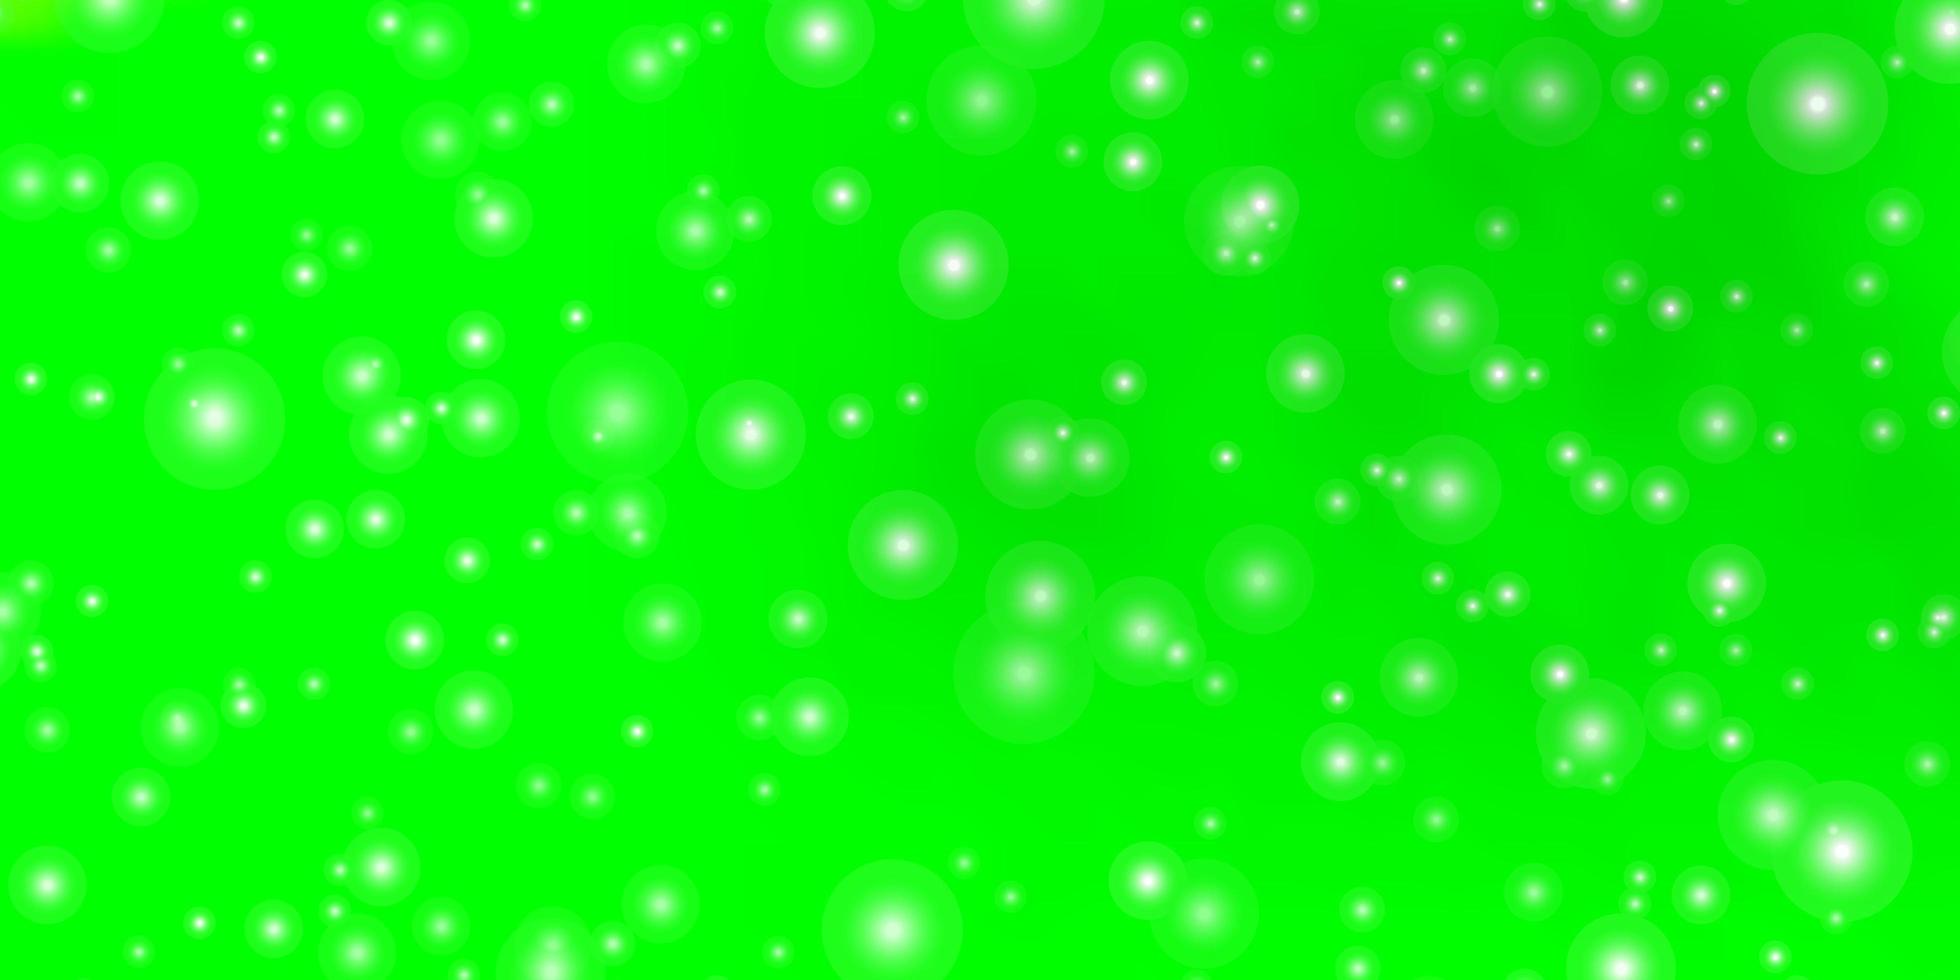 ljusgrön mall med neonstjärnor. vektor